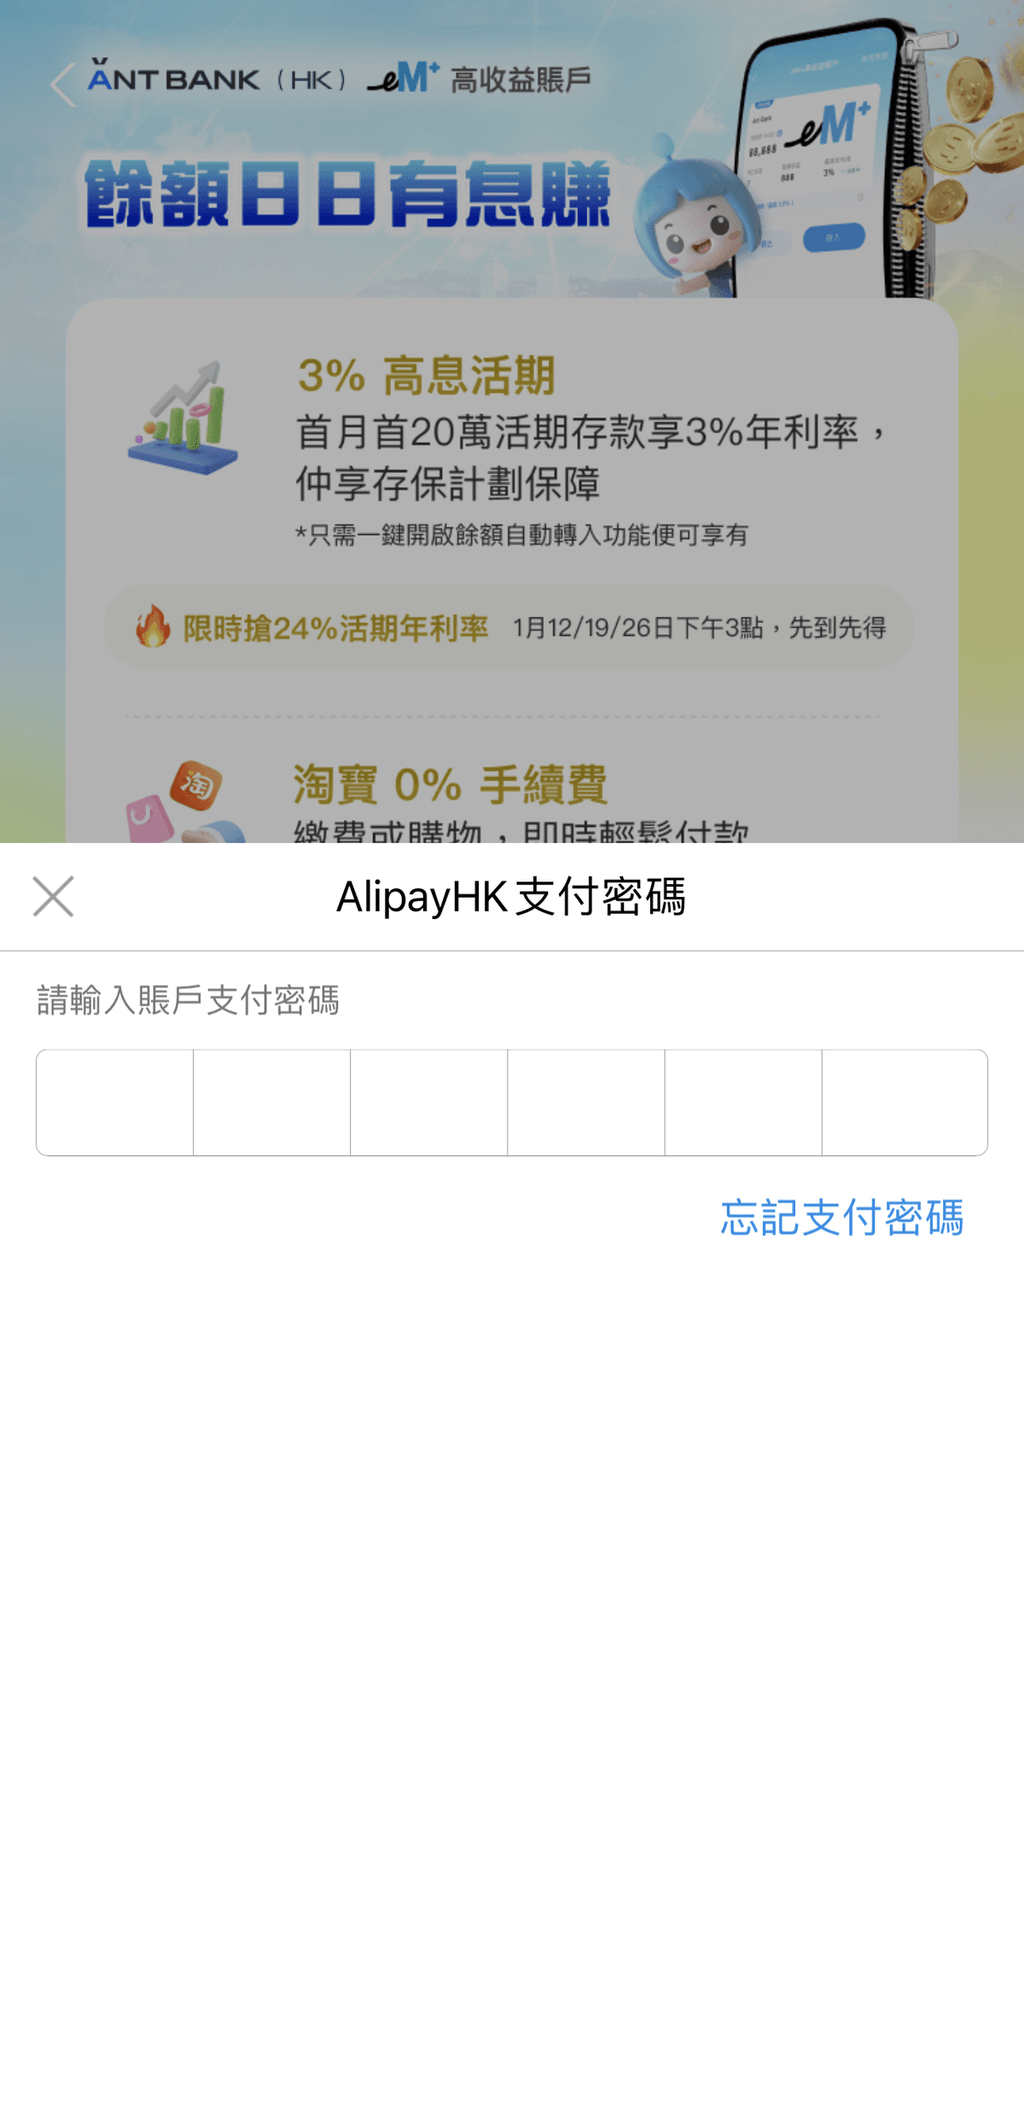 3. 輸入AlipayHK支付密碼確認同意和授權；